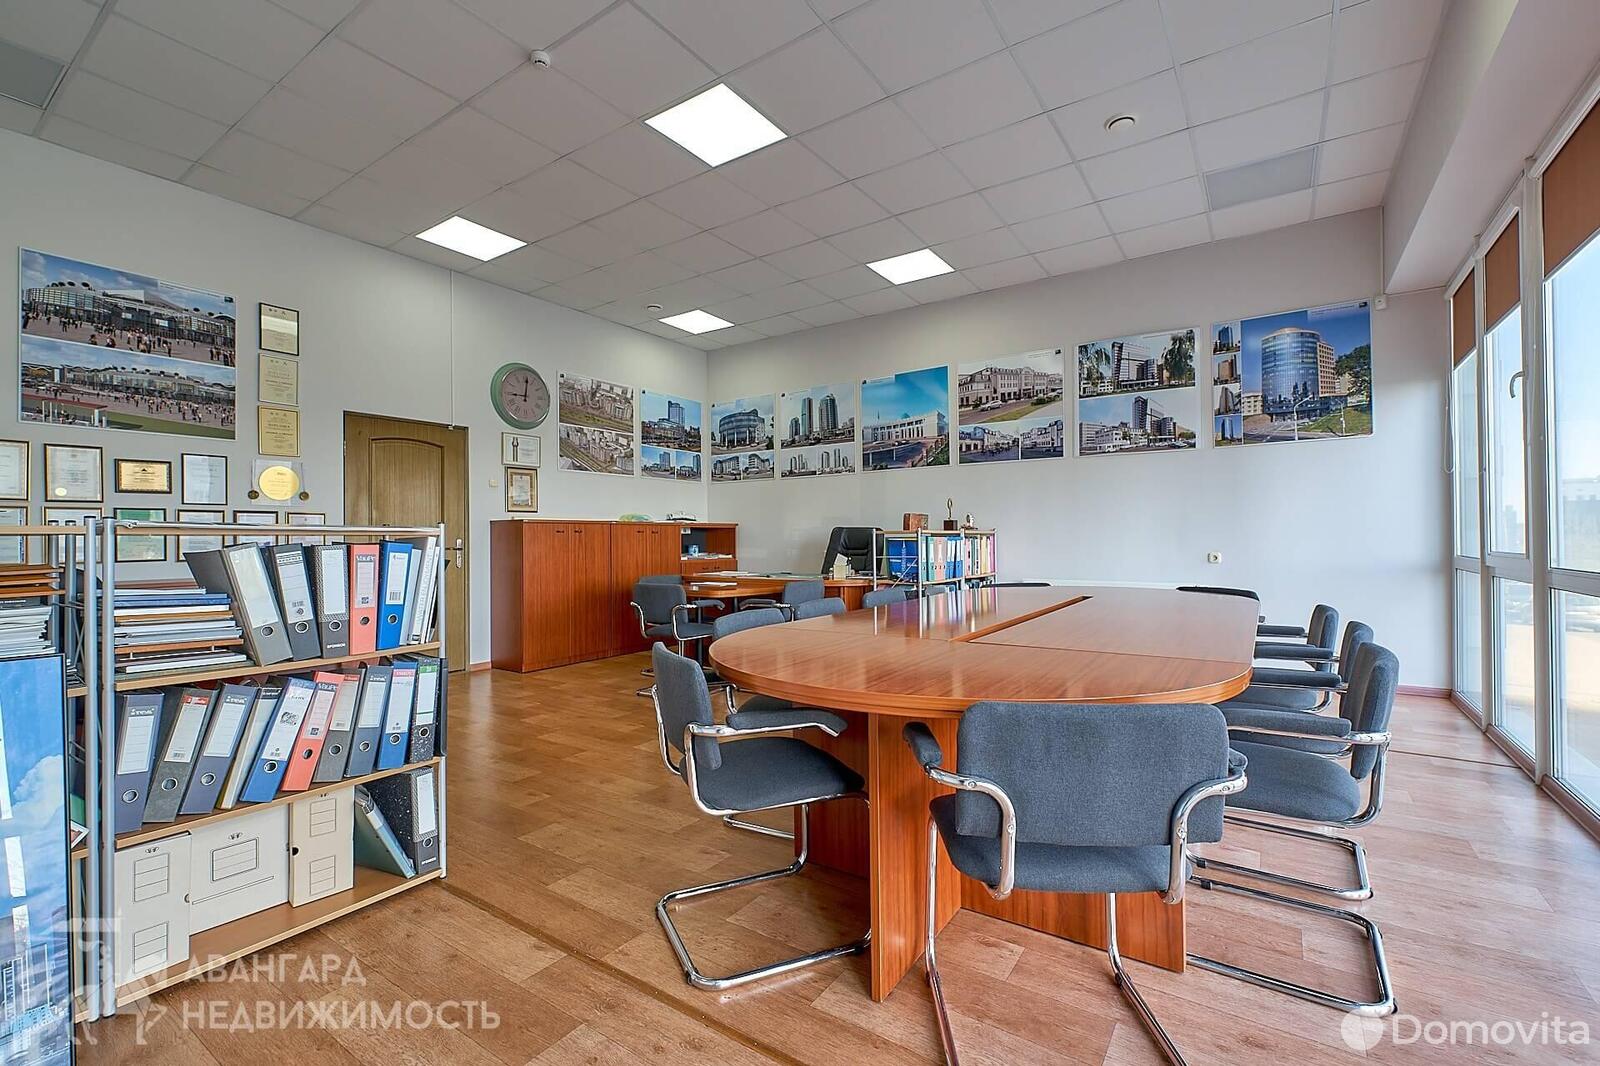 Снять офис на ул. Мястровская, д. 1 в Минске, 3569EUR, код 10284 - фото 2